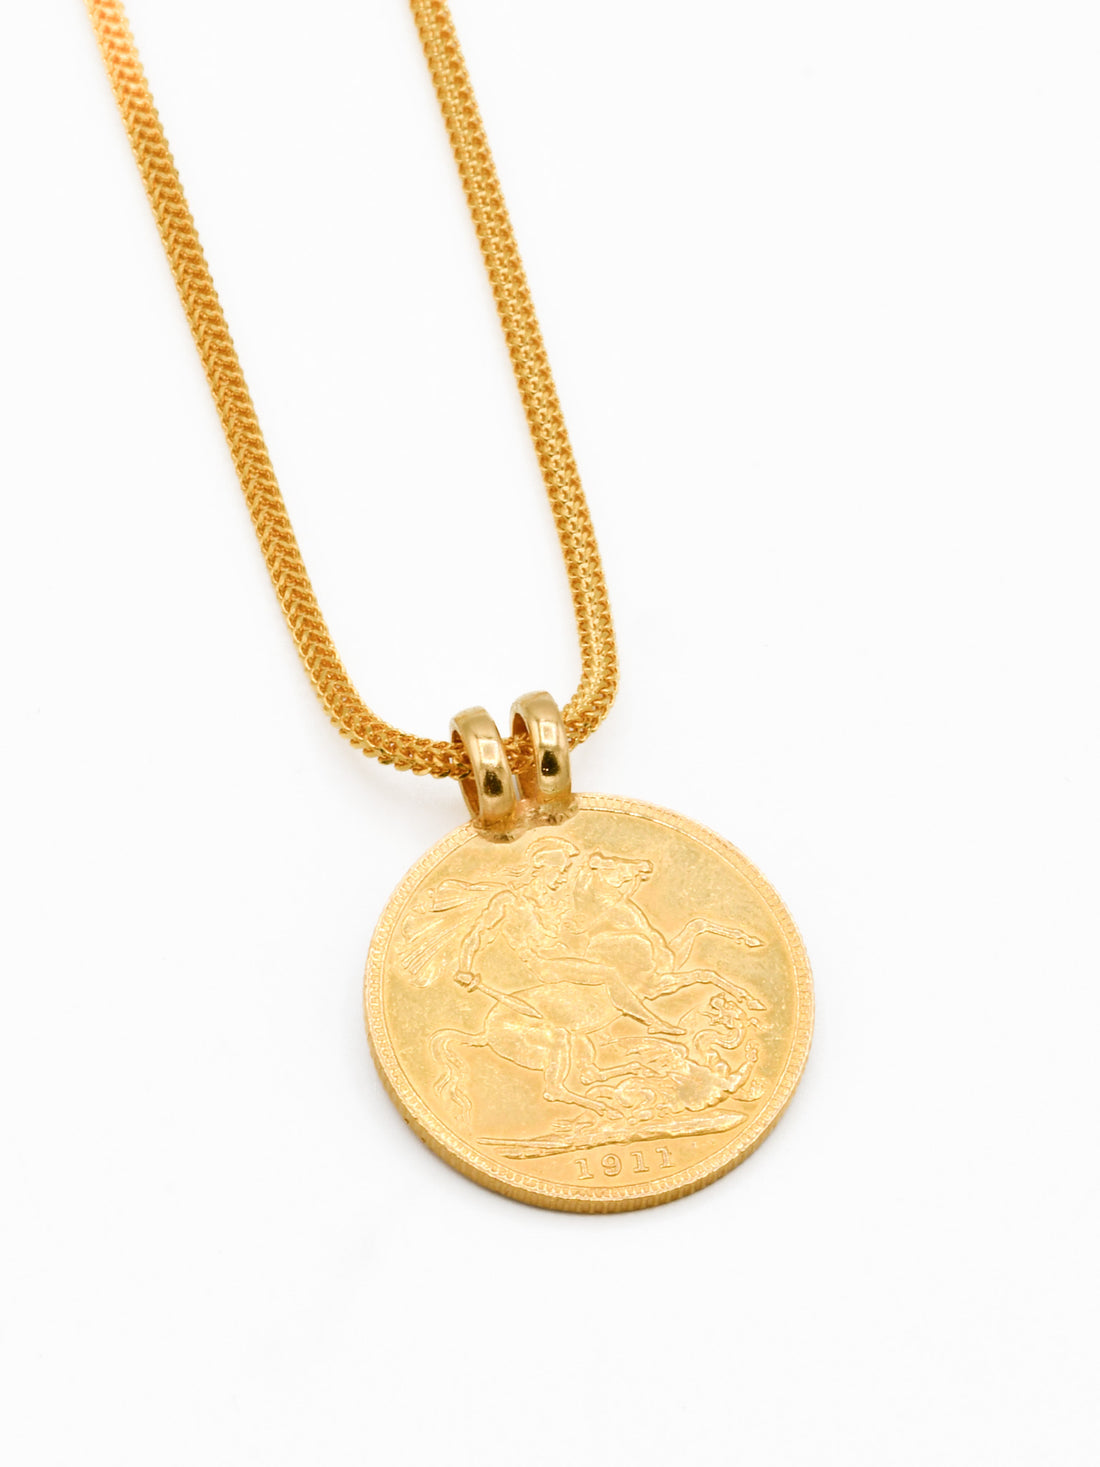 22ct Gold Full Sovereign pendant